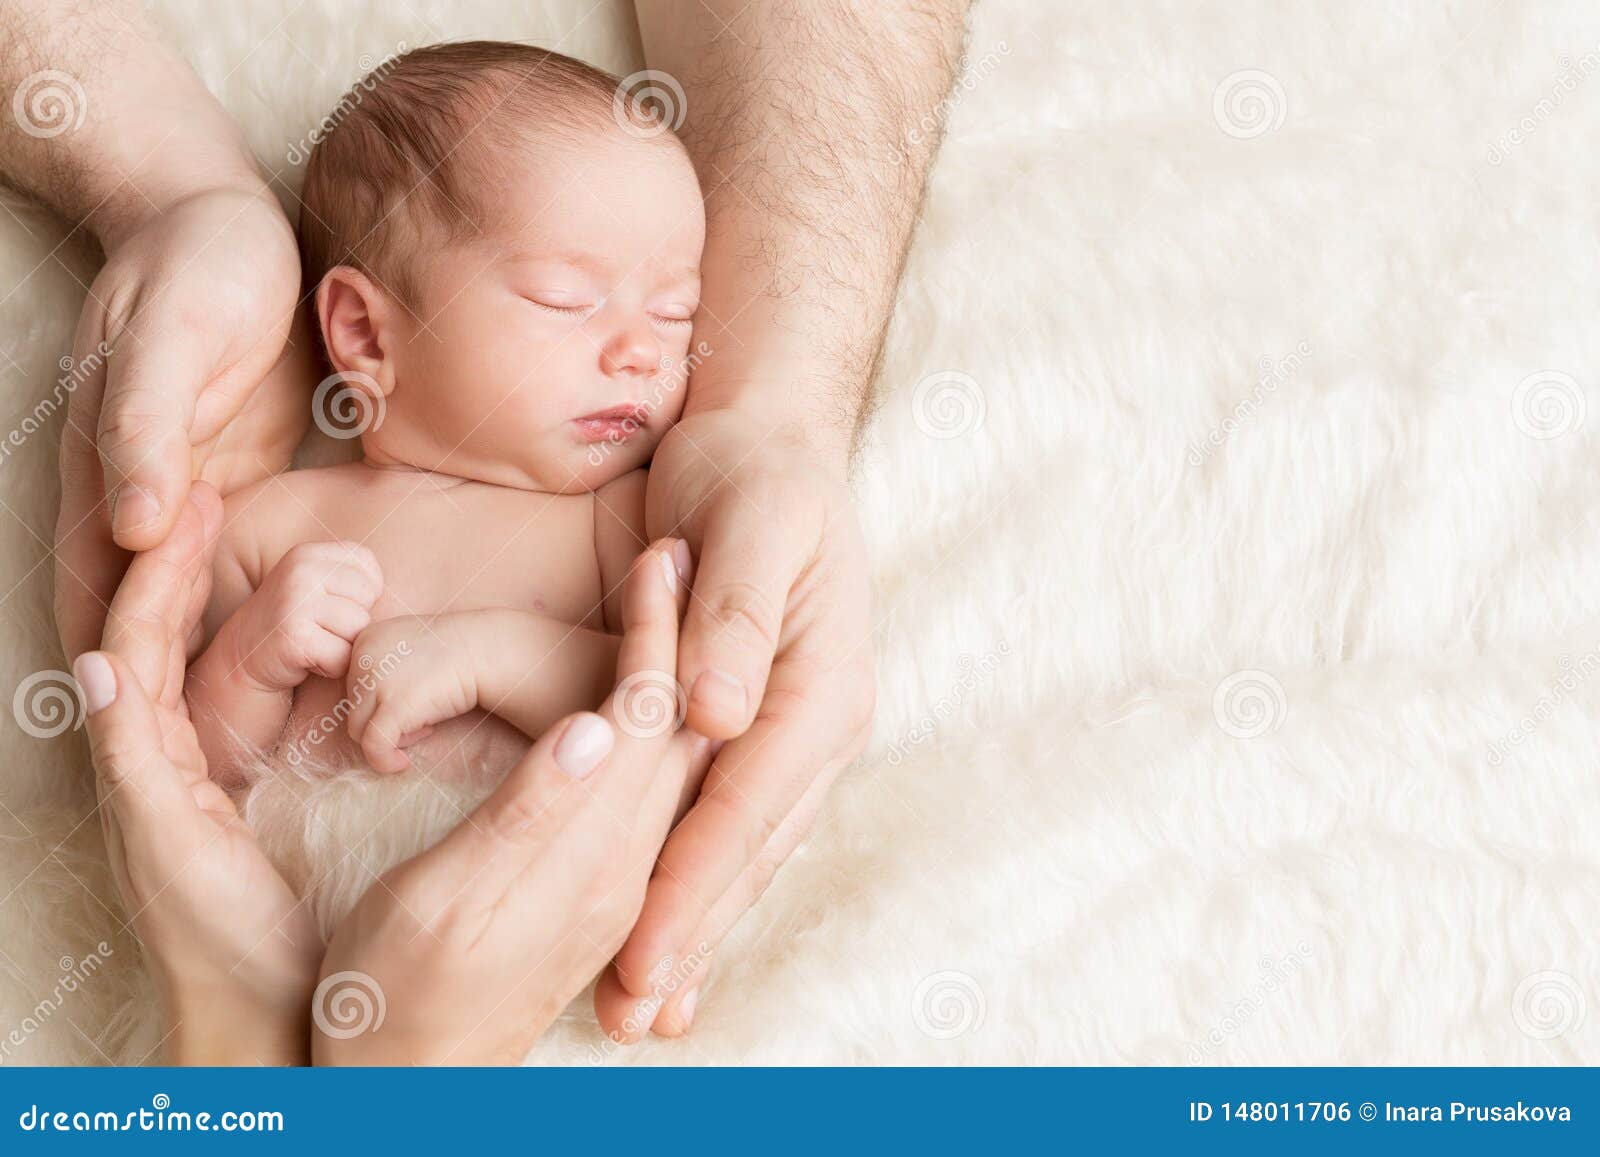 Bebé Recién Nacido En Manos De La Familia, Niño Recién Nacido Durmiente, Cuidado De de archivo - Imagen de lindo, llevado: 148011706